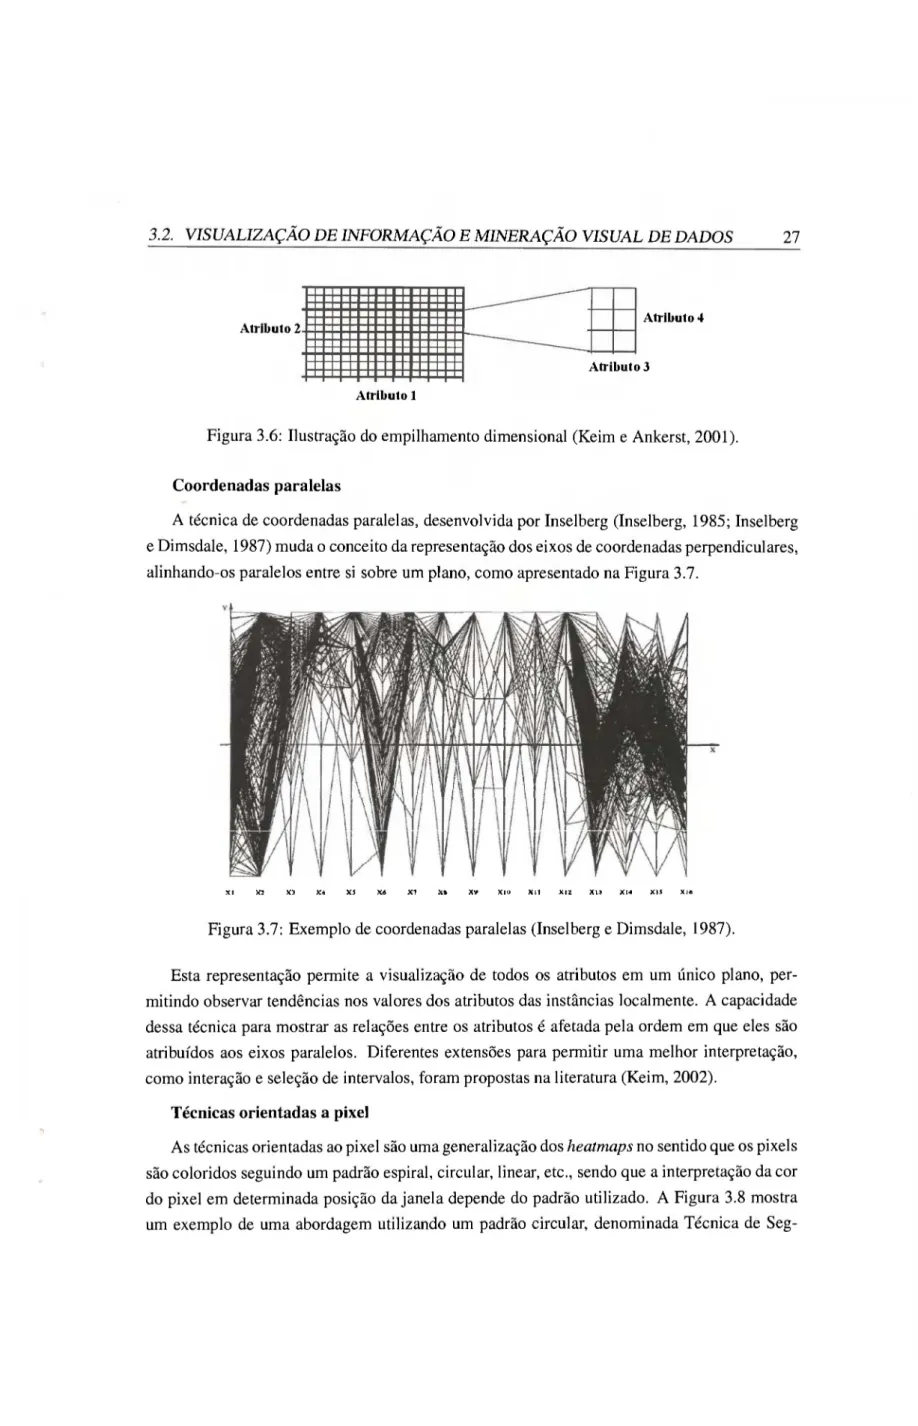 Figura 3.6: Ilustração do empilhamento dimensional (Keim e Ankerst, 2001). 